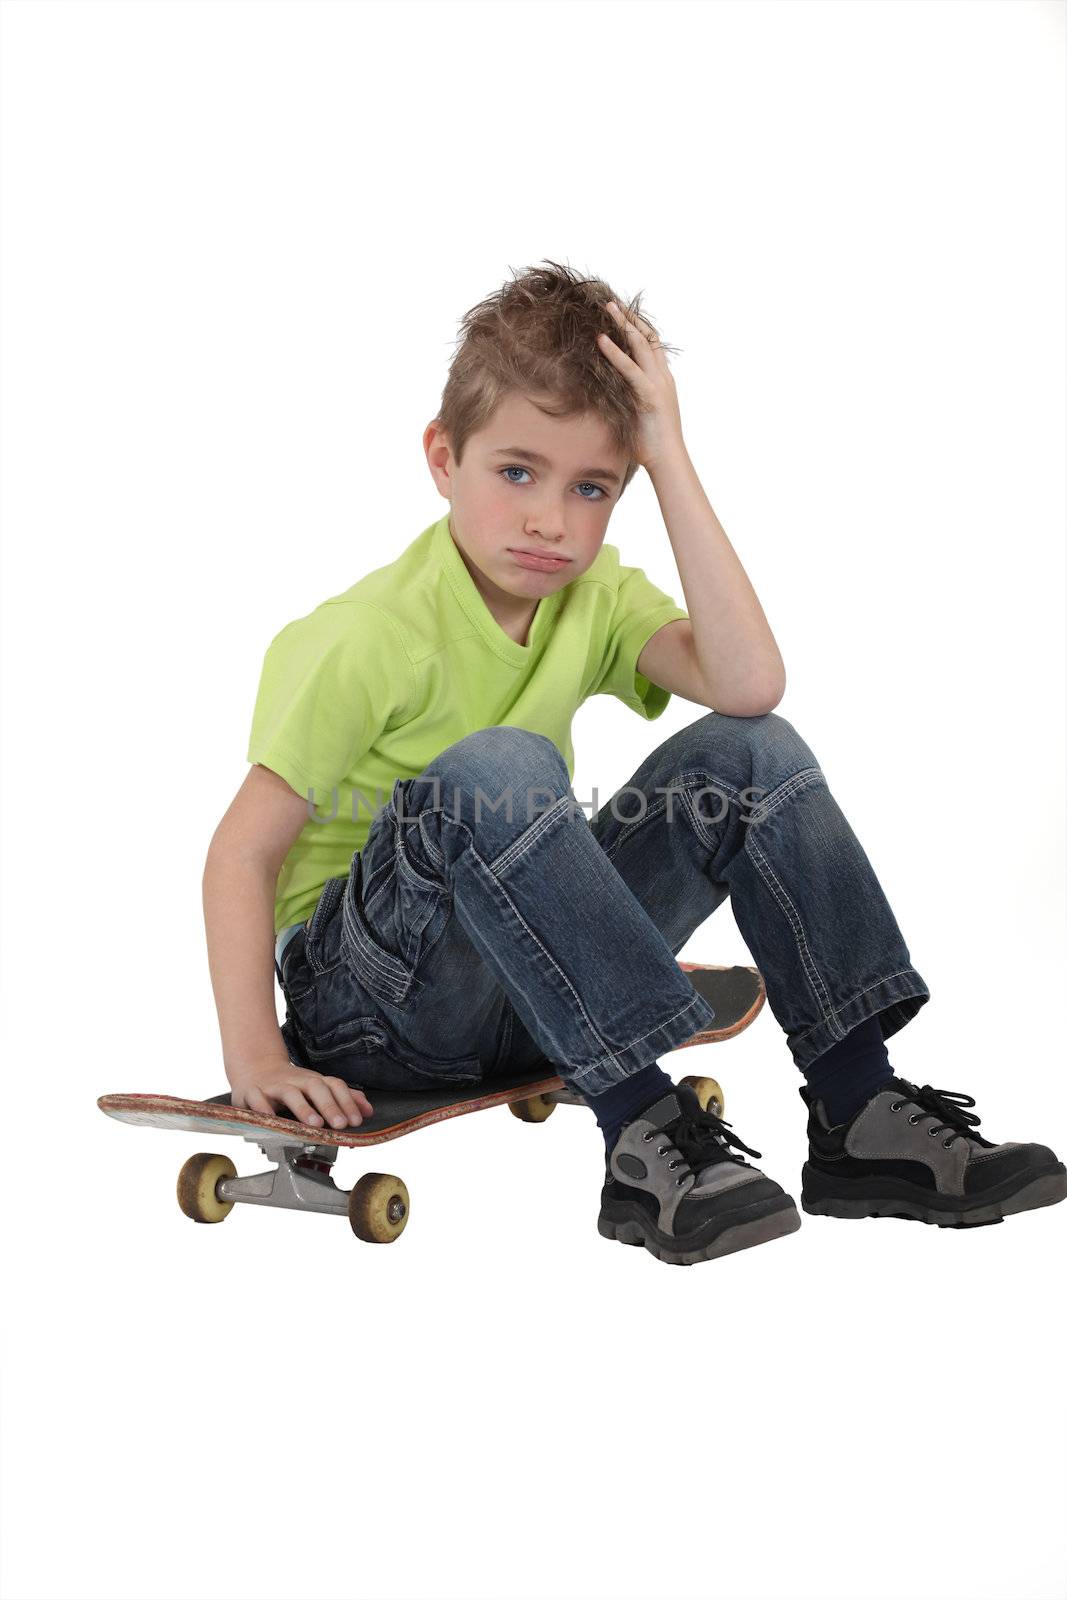 Little boy with skate board